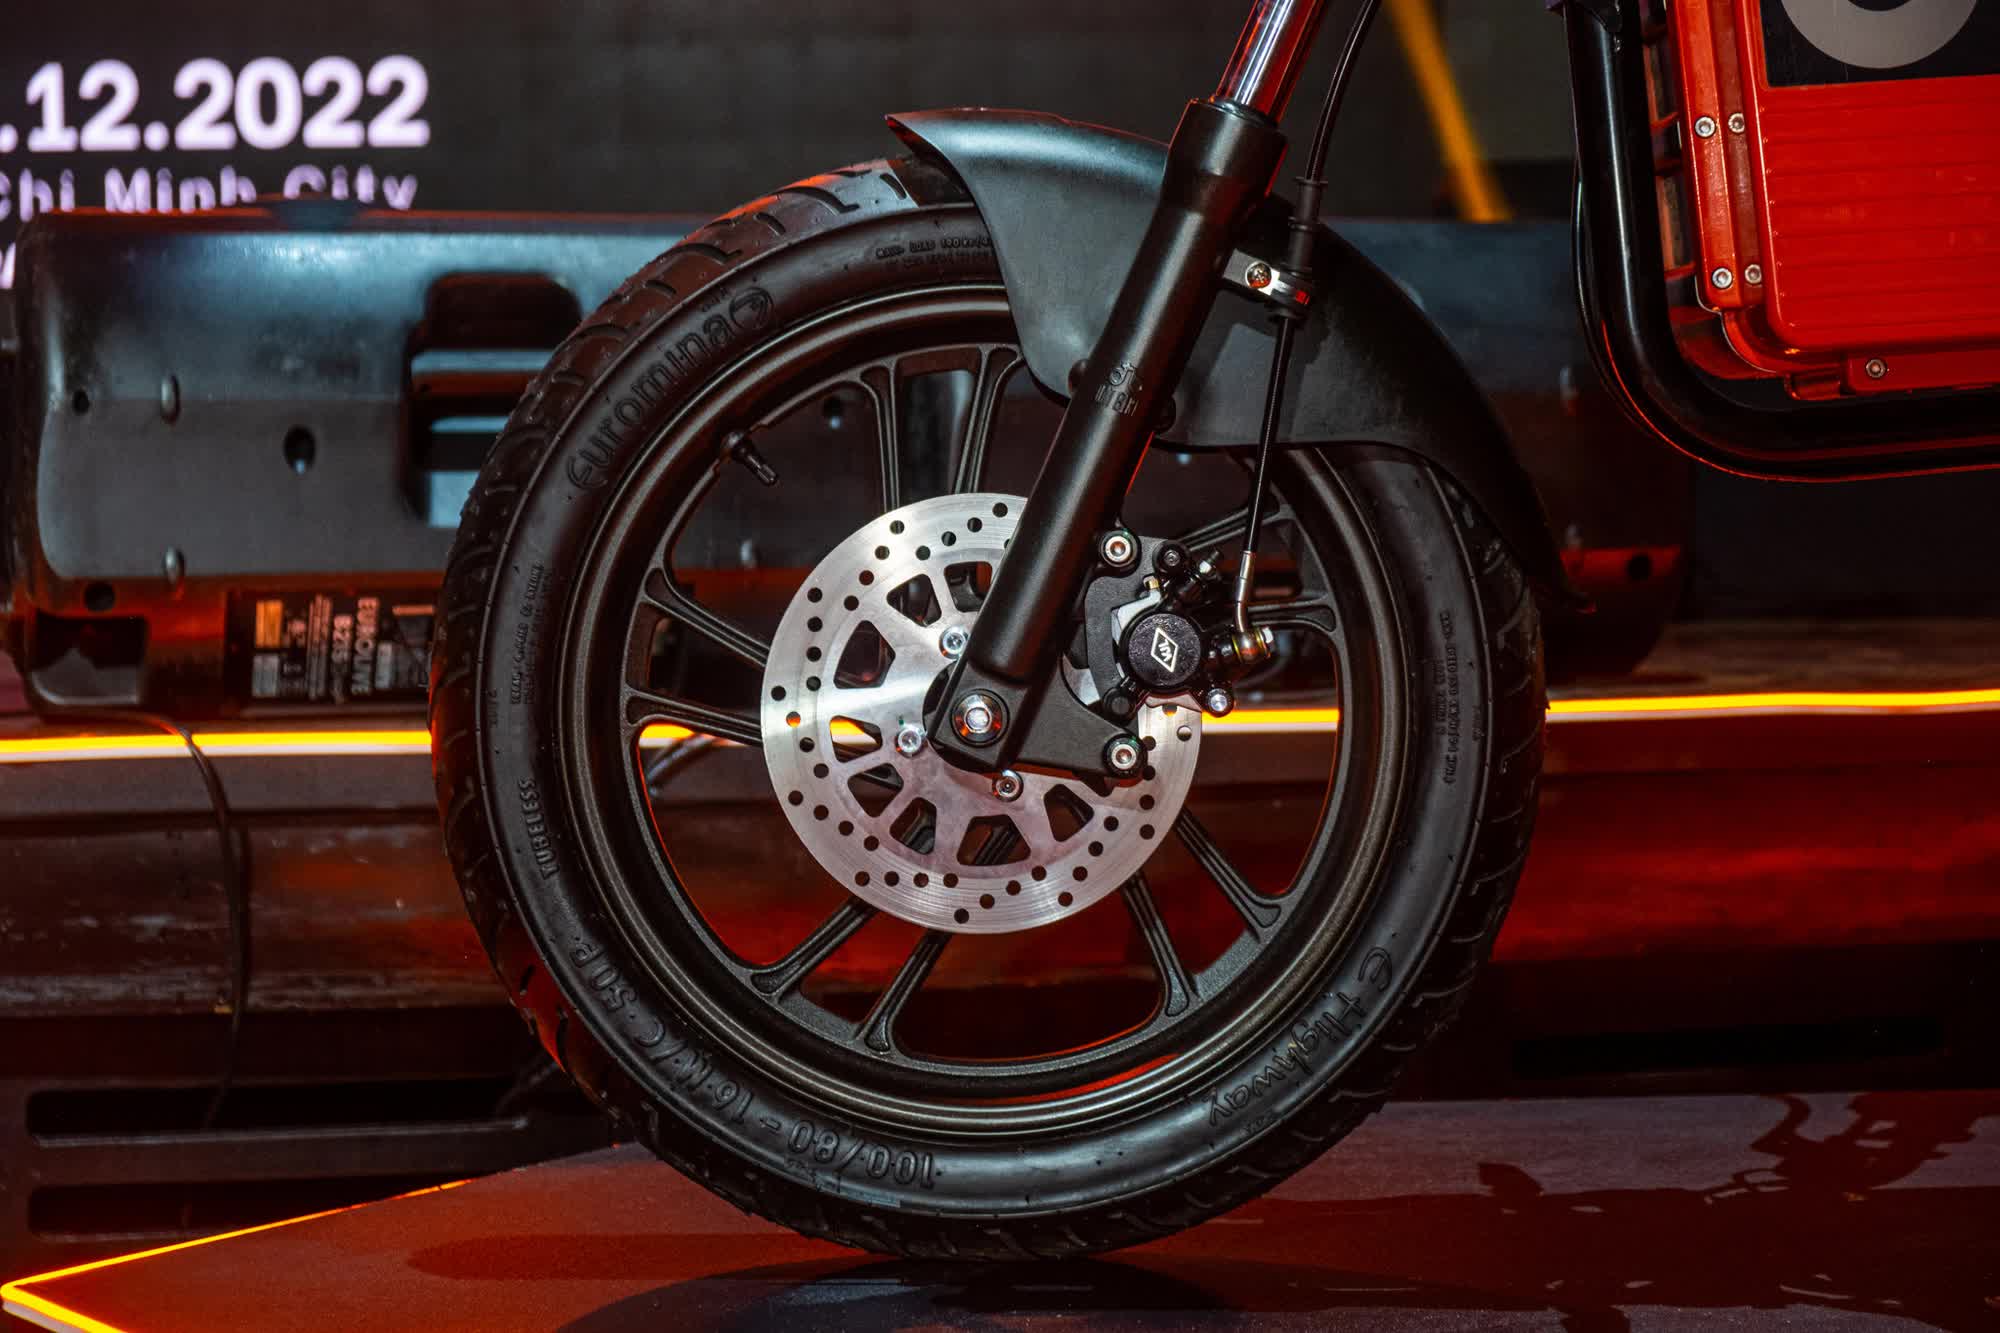 Ra mắt Dat Bike Weaver++: Giá 65,9 triệu đồng, dáng cổ điển, sạc nhanh chưa từng có tại Việt Nam - ảnh 6